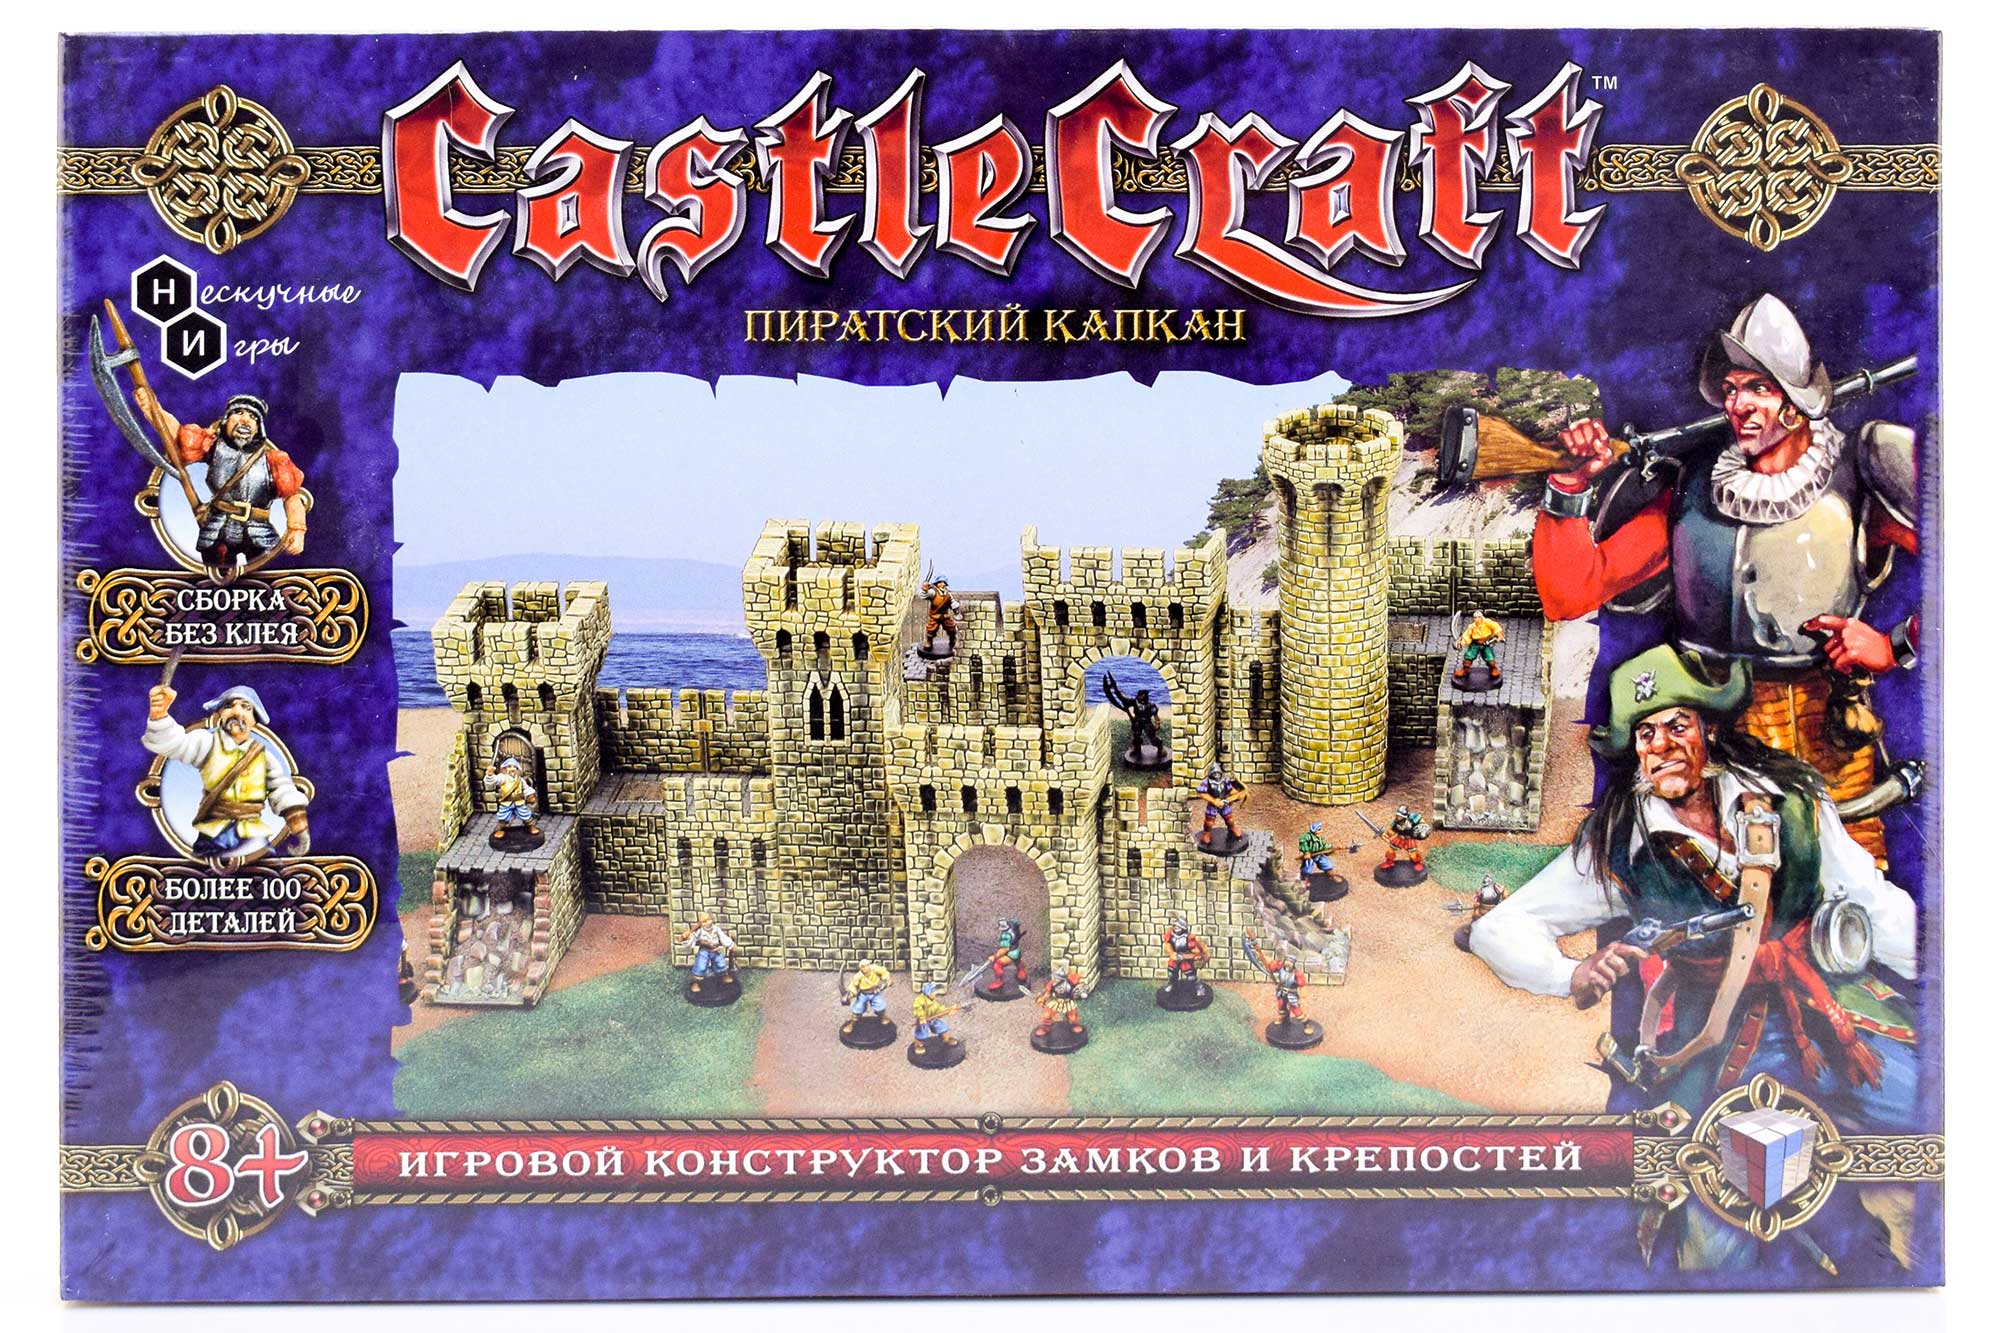 цена Набор Технолог Castlecraft Пиратский капкан крепость арт. 00345 /4